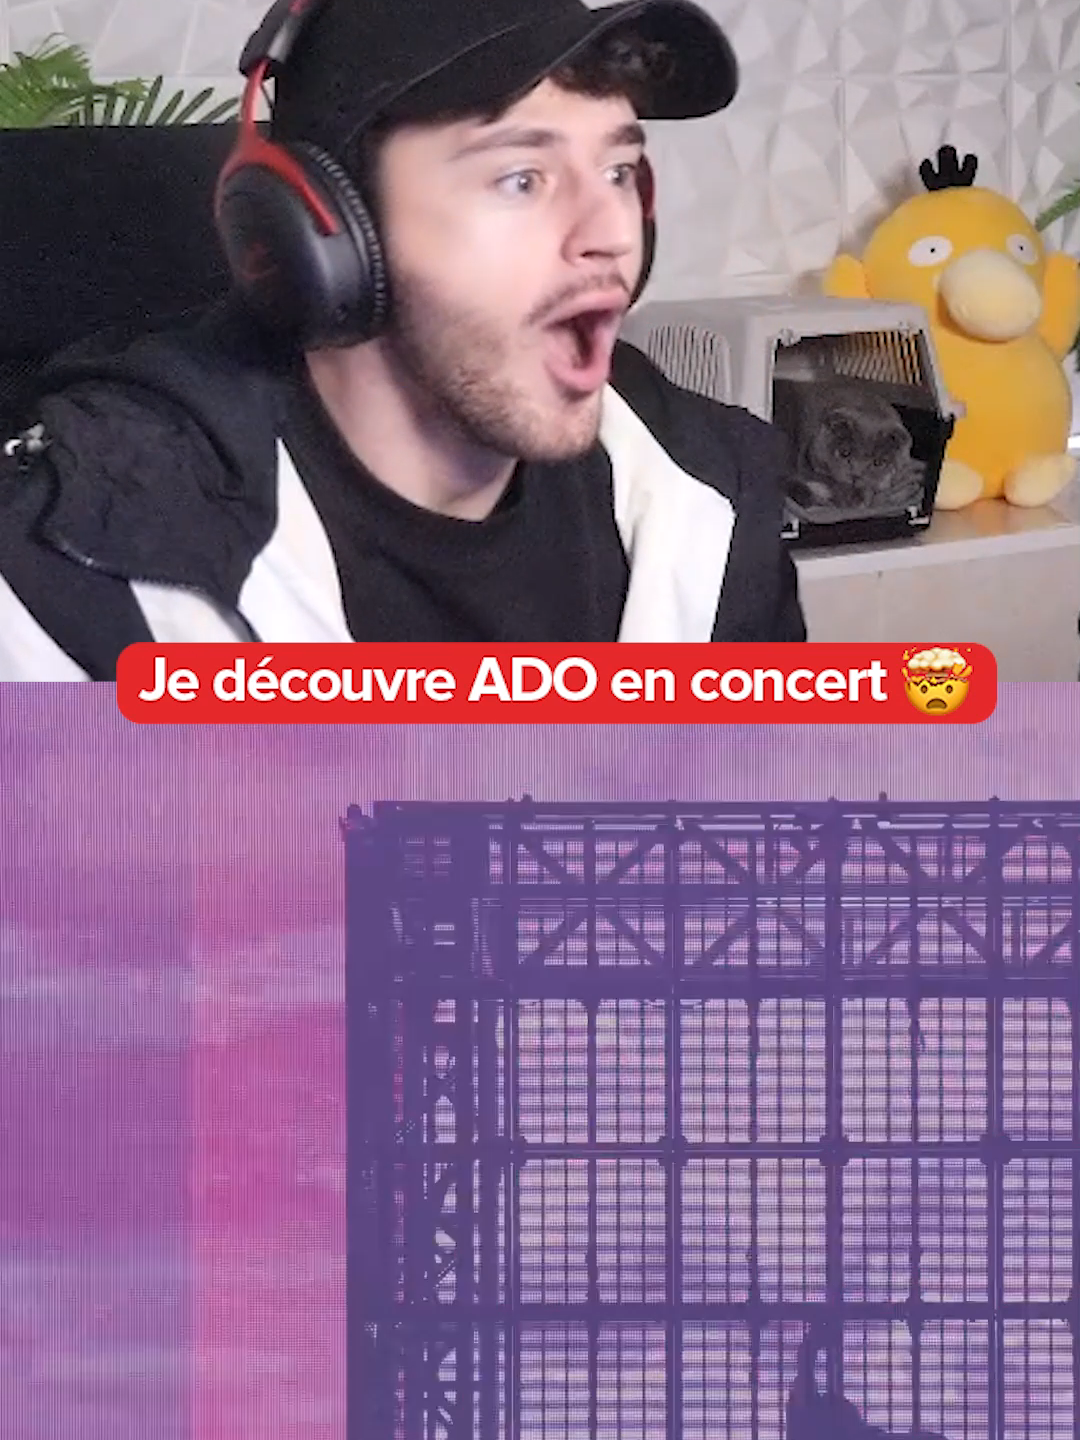 Je découvre Ado en concert #concert #live #cover #tokyoghoul #react #reaction